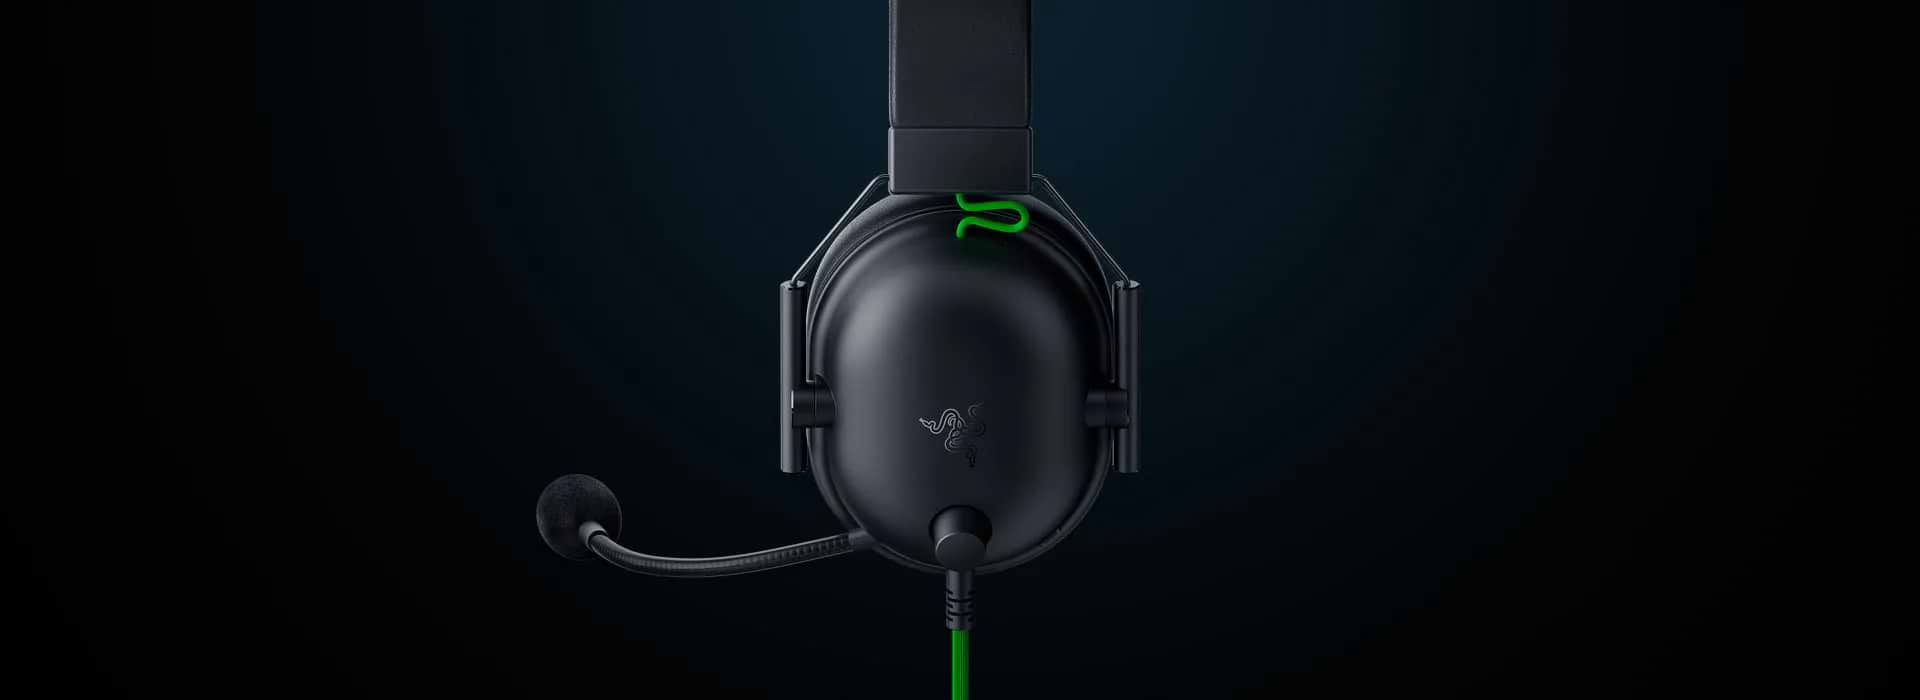 אוזניות גיימינג חוטיות Razer BlackShark V2 USB S.E - צבע שחור שנתיים אחריות ע"י יבואן הרשמי